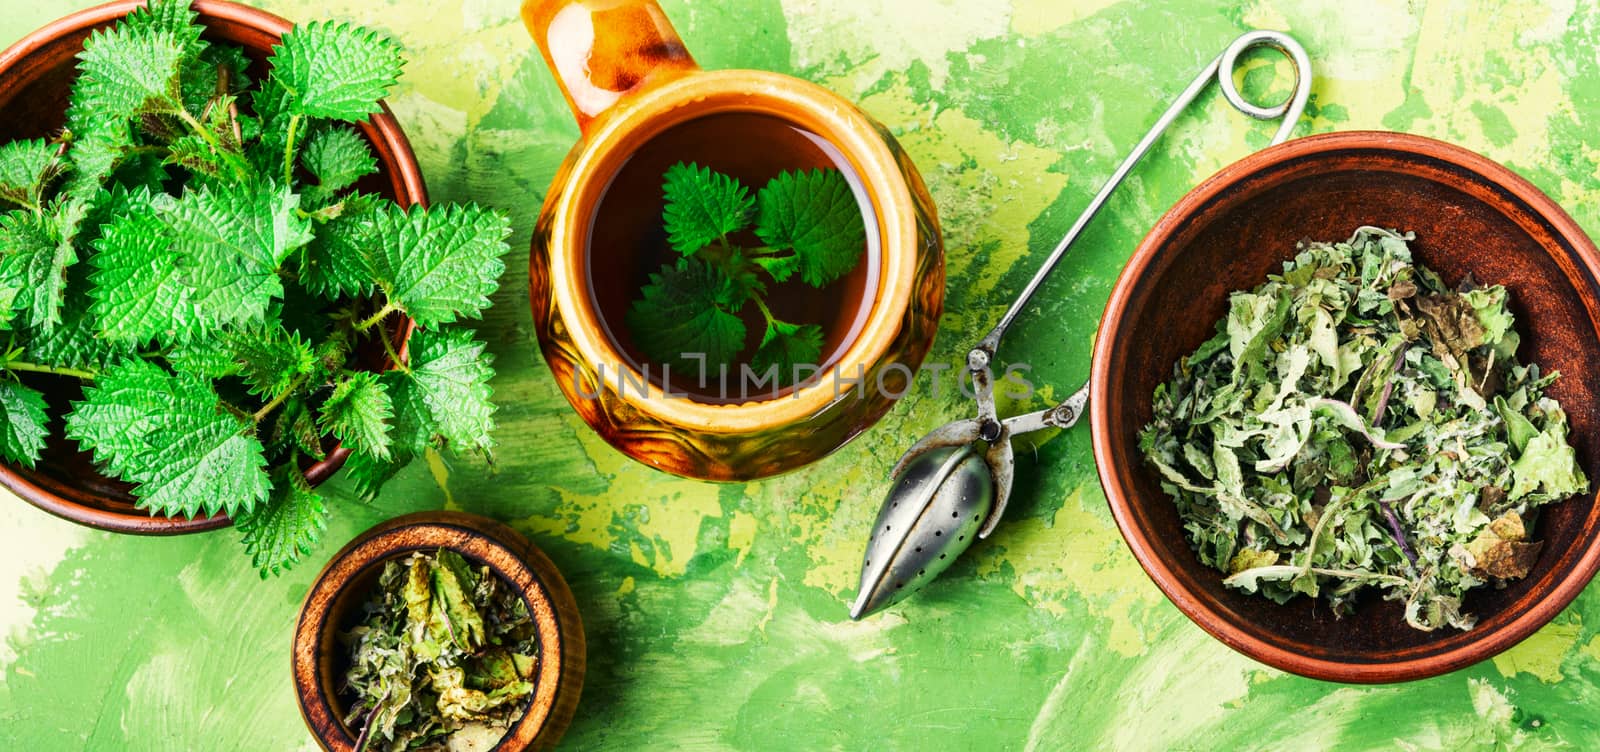 Tea with nettle by LMykola